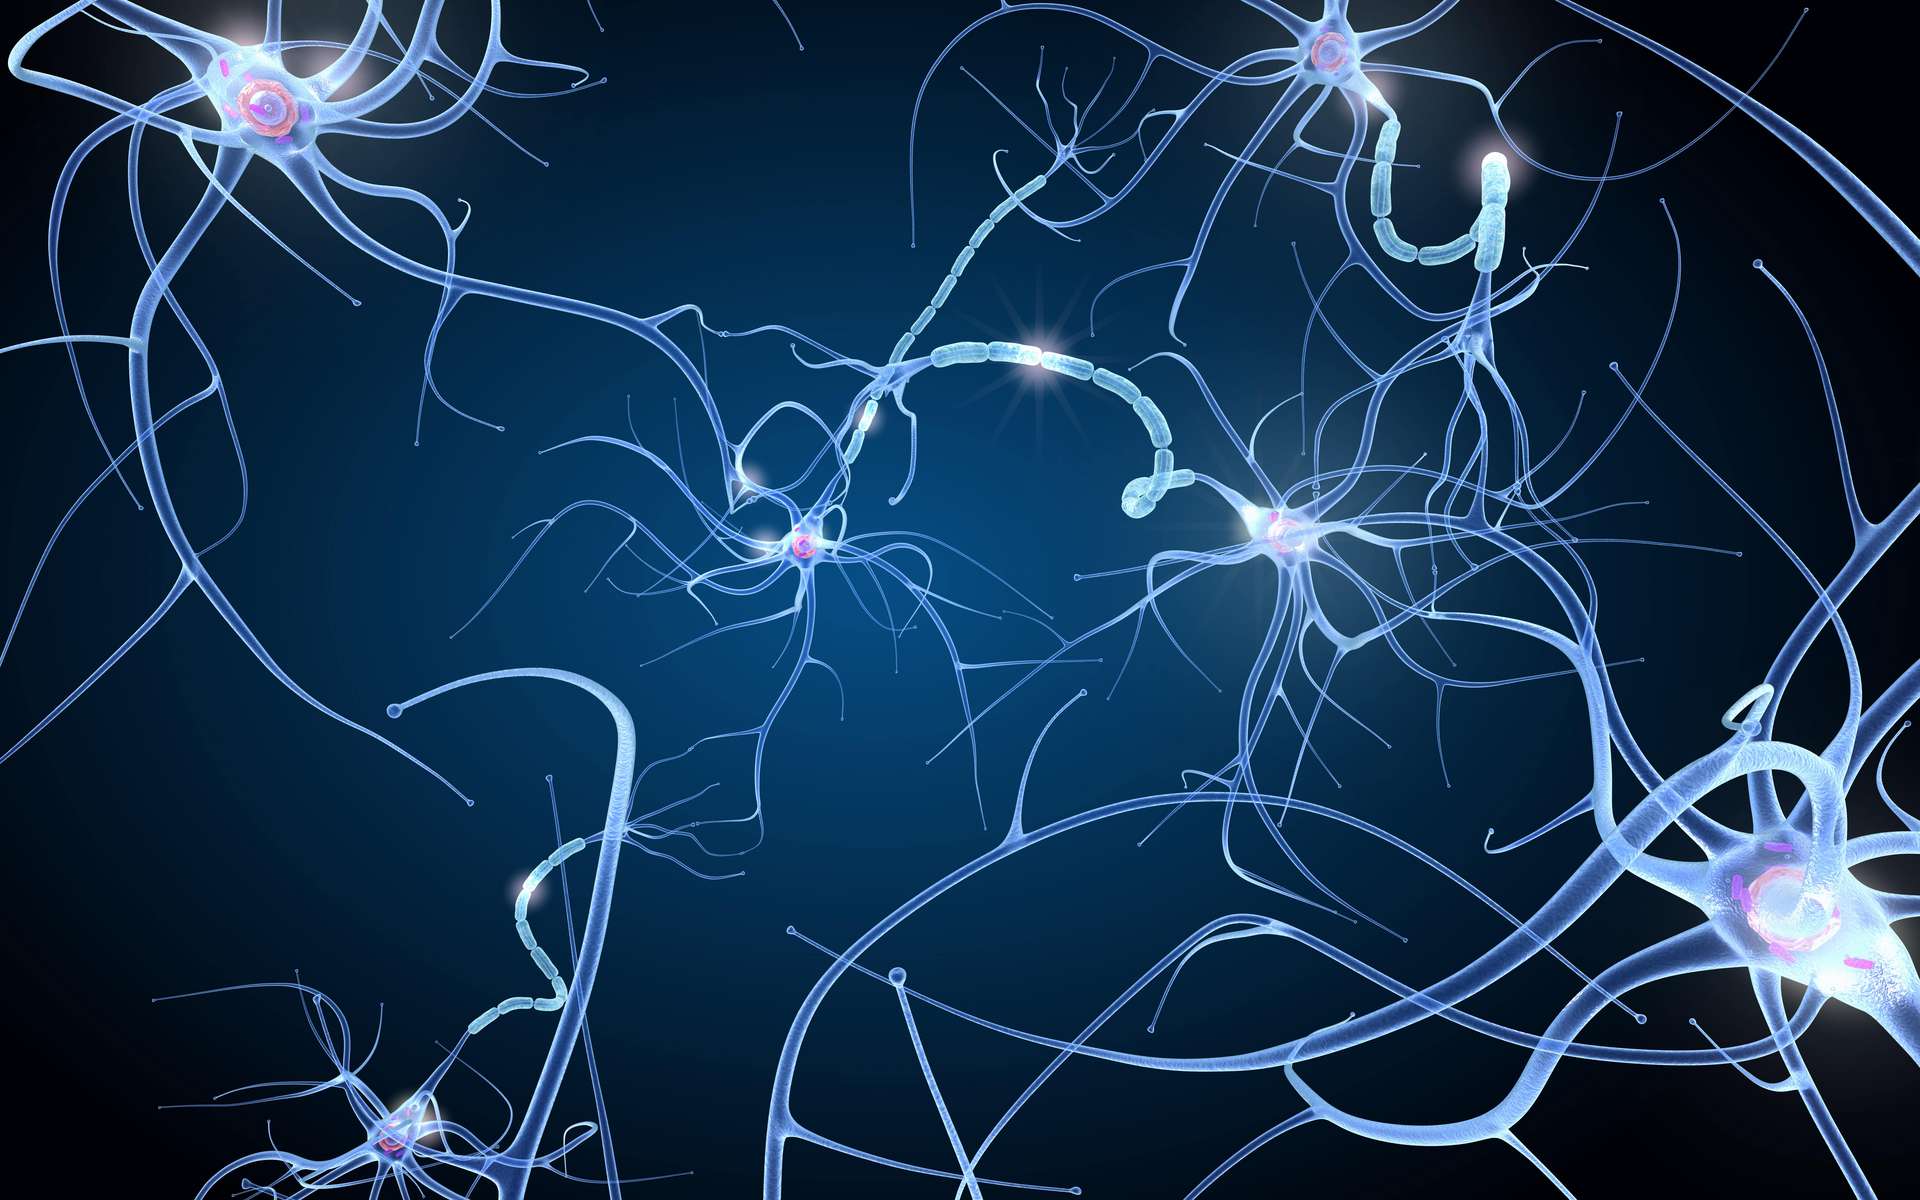 Un ensemble de neurones, disposé sur une puce, fait preuve d'intelligence en apprenant à jouer à Pong. © Alexandr Mitiuc, Adobe Stock